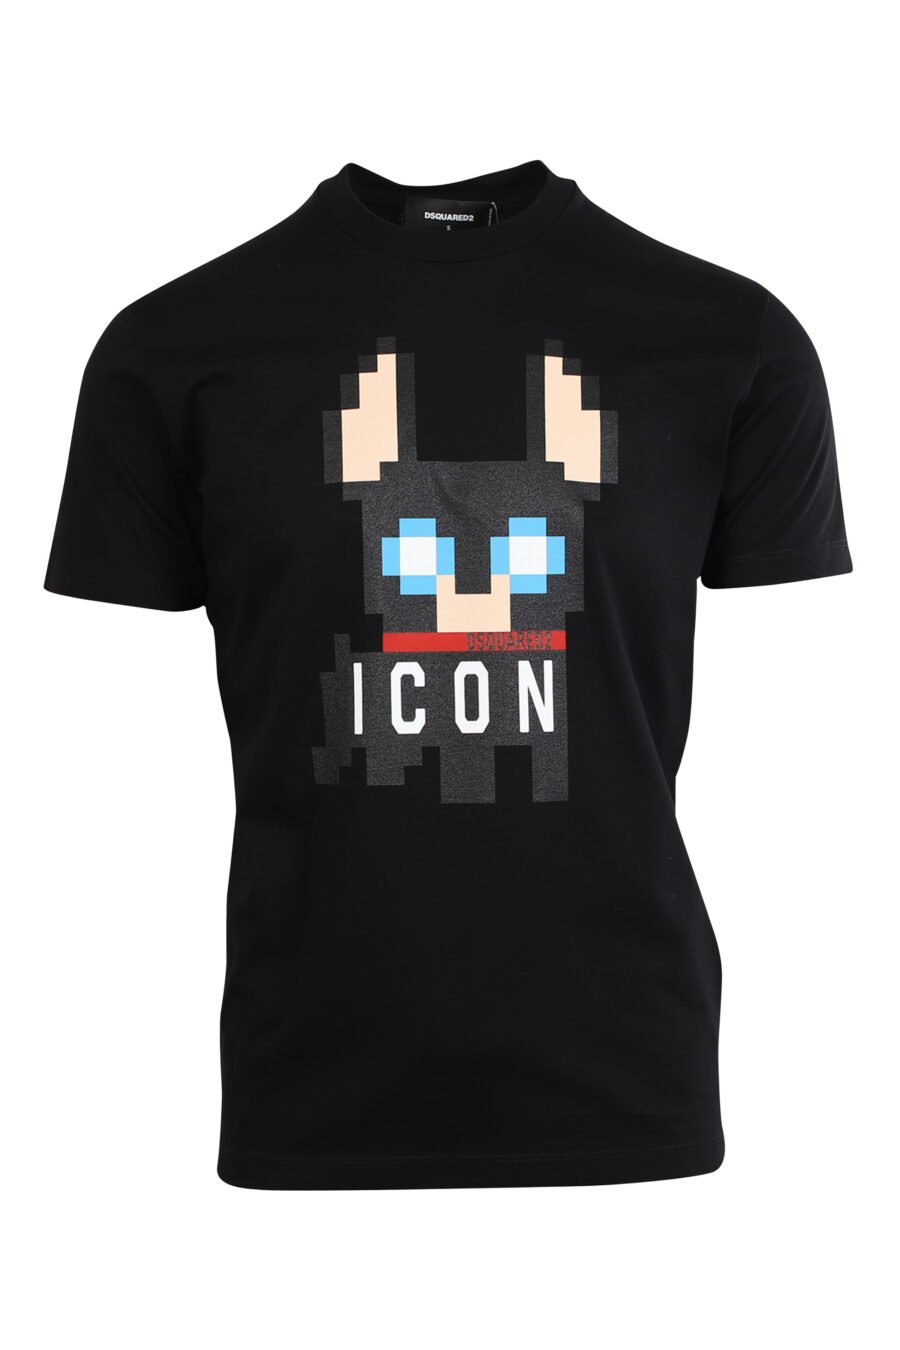 T-shirt noir avec maxilogo chien "Pixeled" - 8052134980774